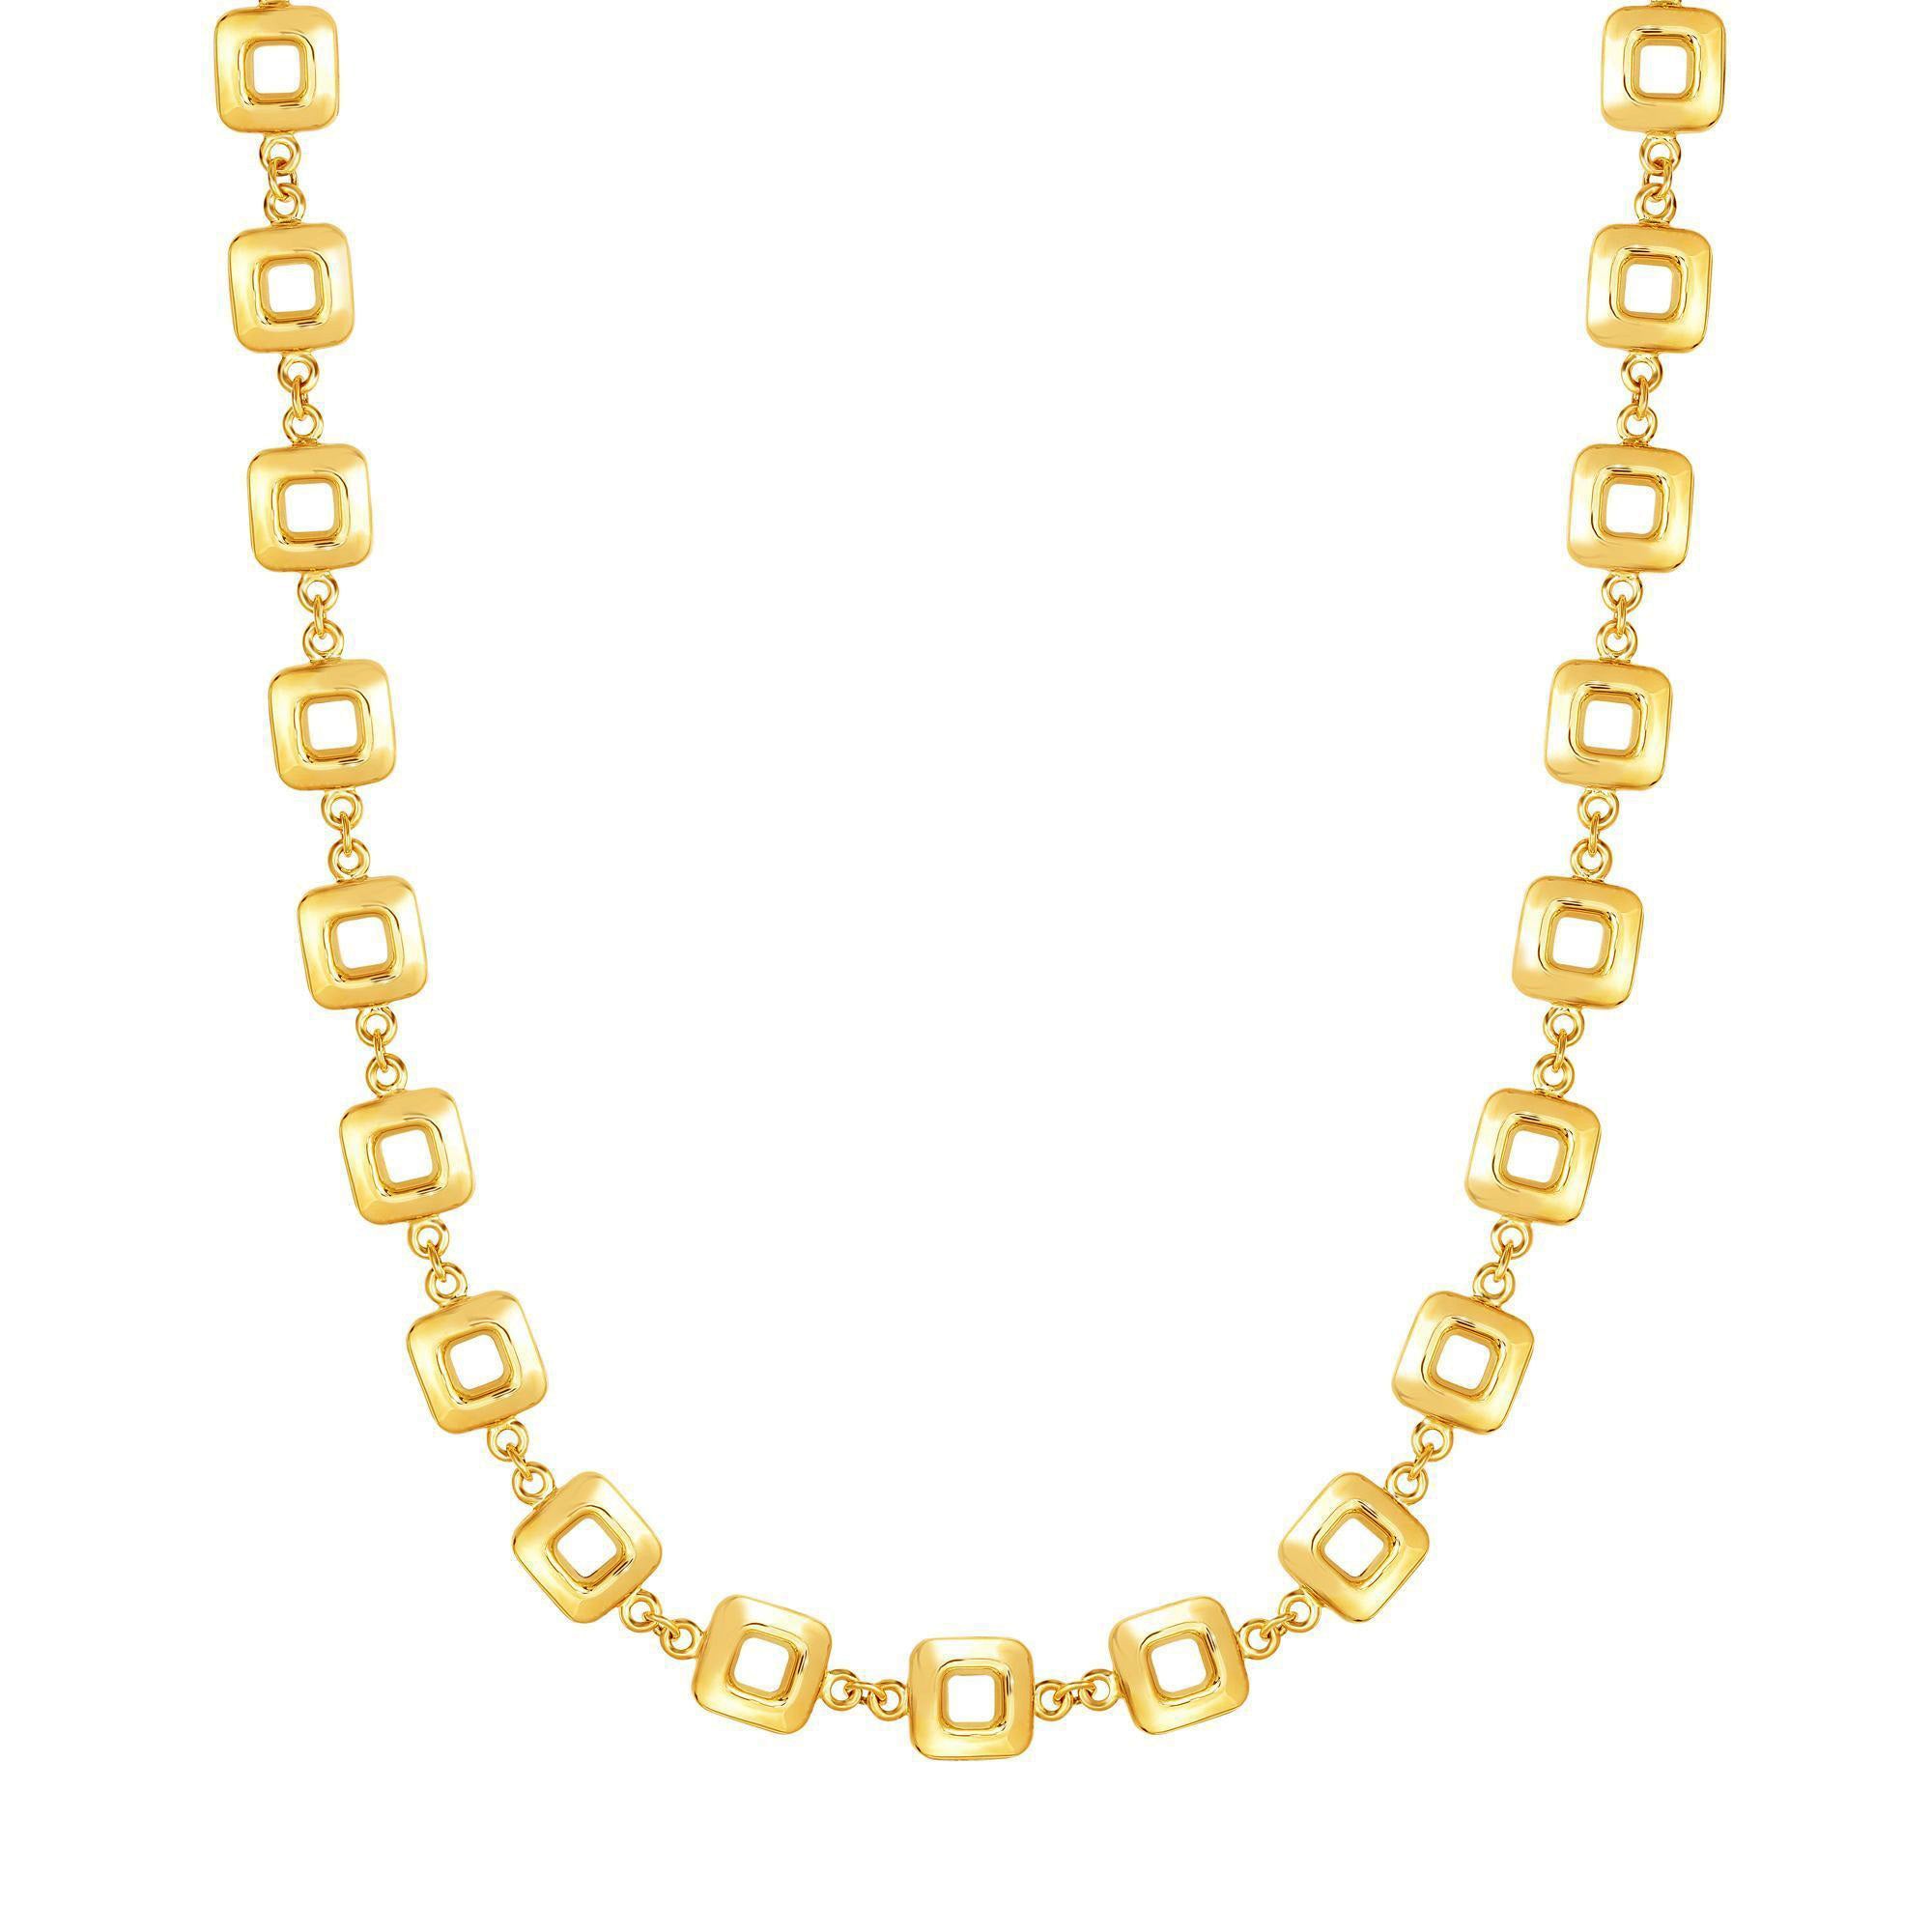 Kvindehalskæde i 14 karat gult guld med firkantet led, 17" fine designersmykker til mænd og kvinder